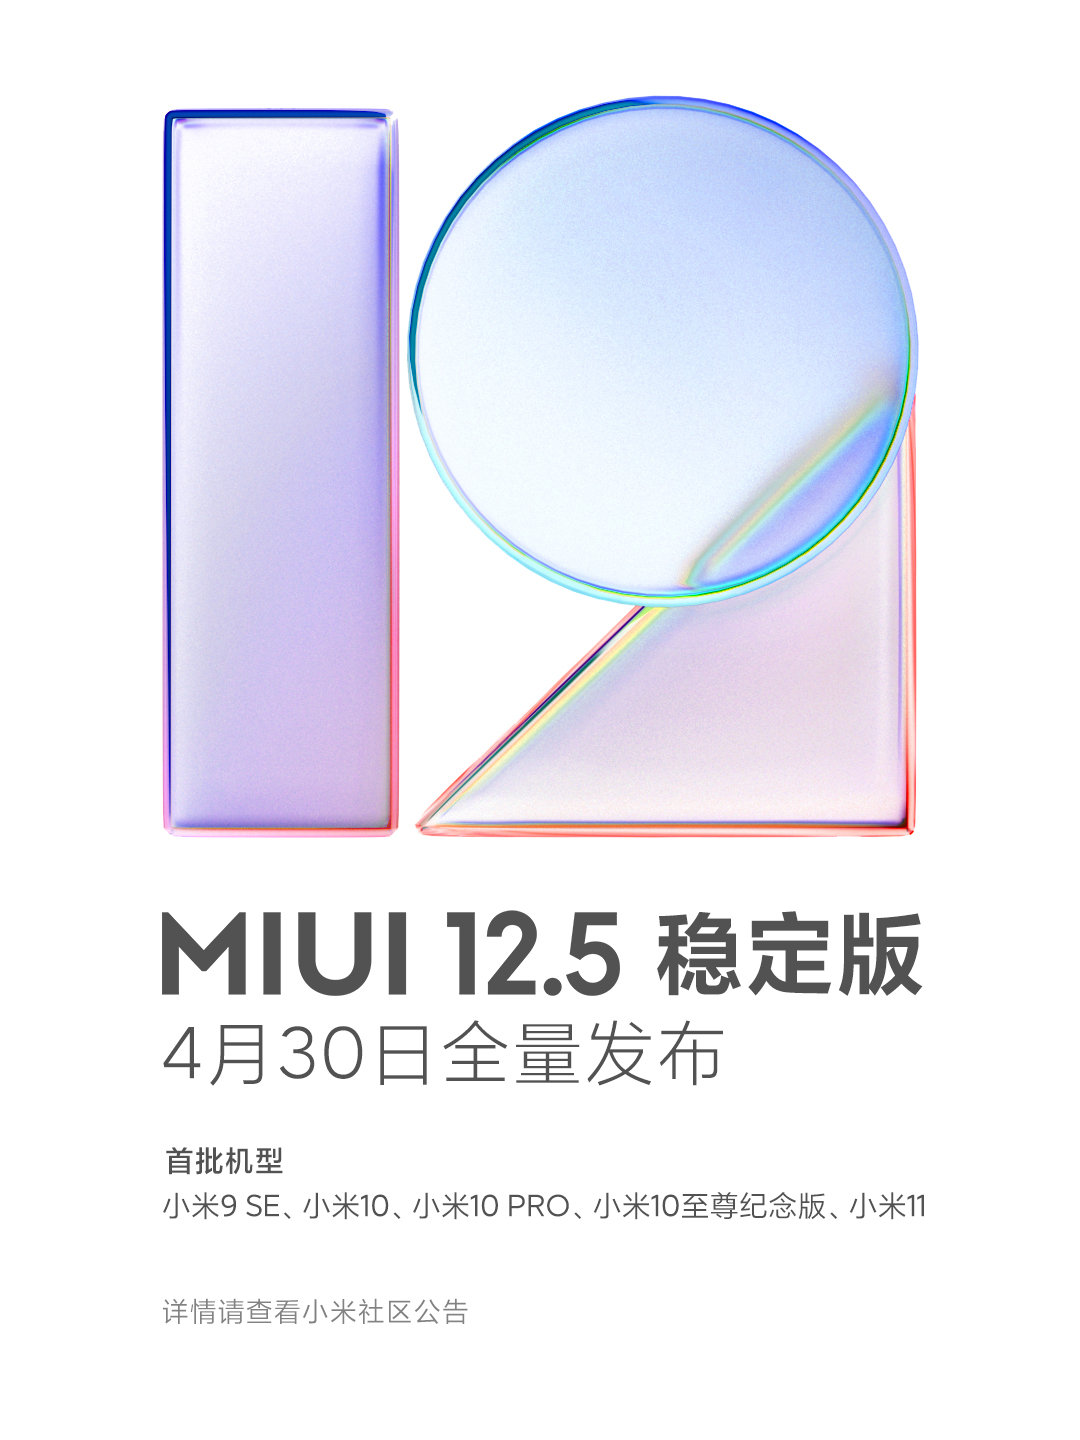 小米最新推出 19 条用户政策，MIUI 12.5 稳定版 4 月 30 日全量发布